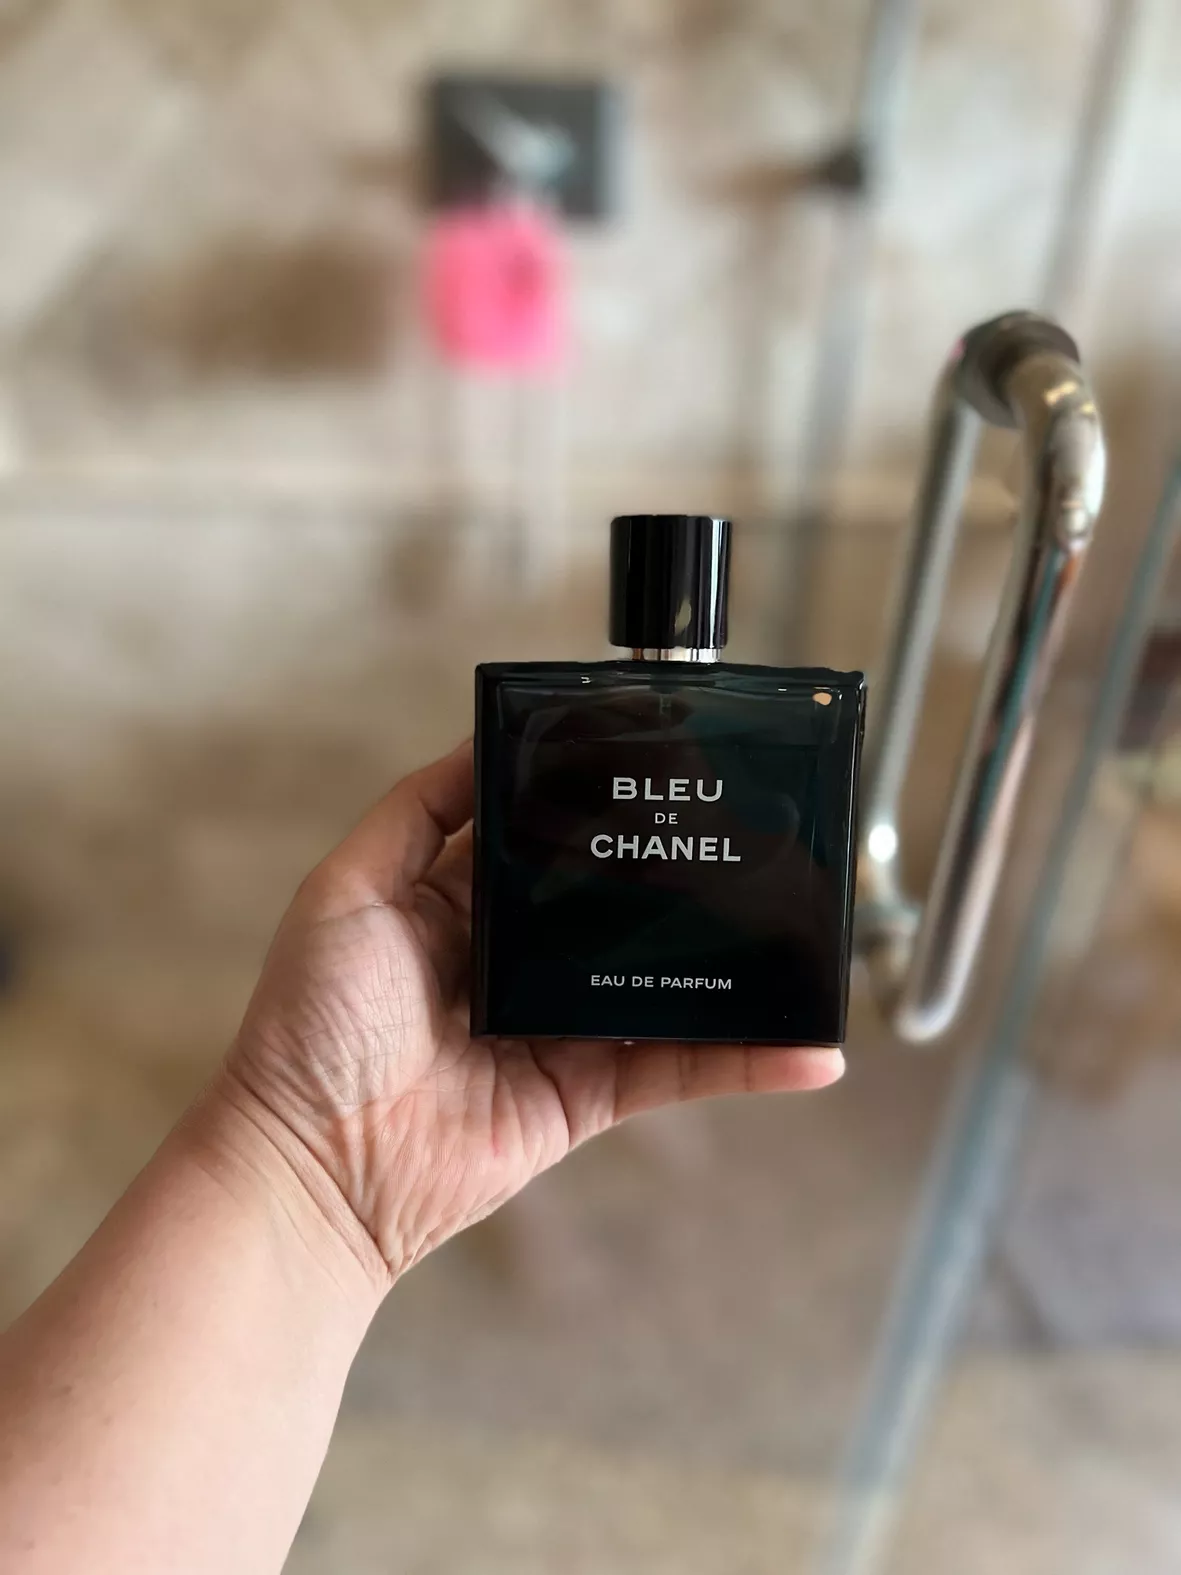 bleu de chanel eau de parfum sold by amazon